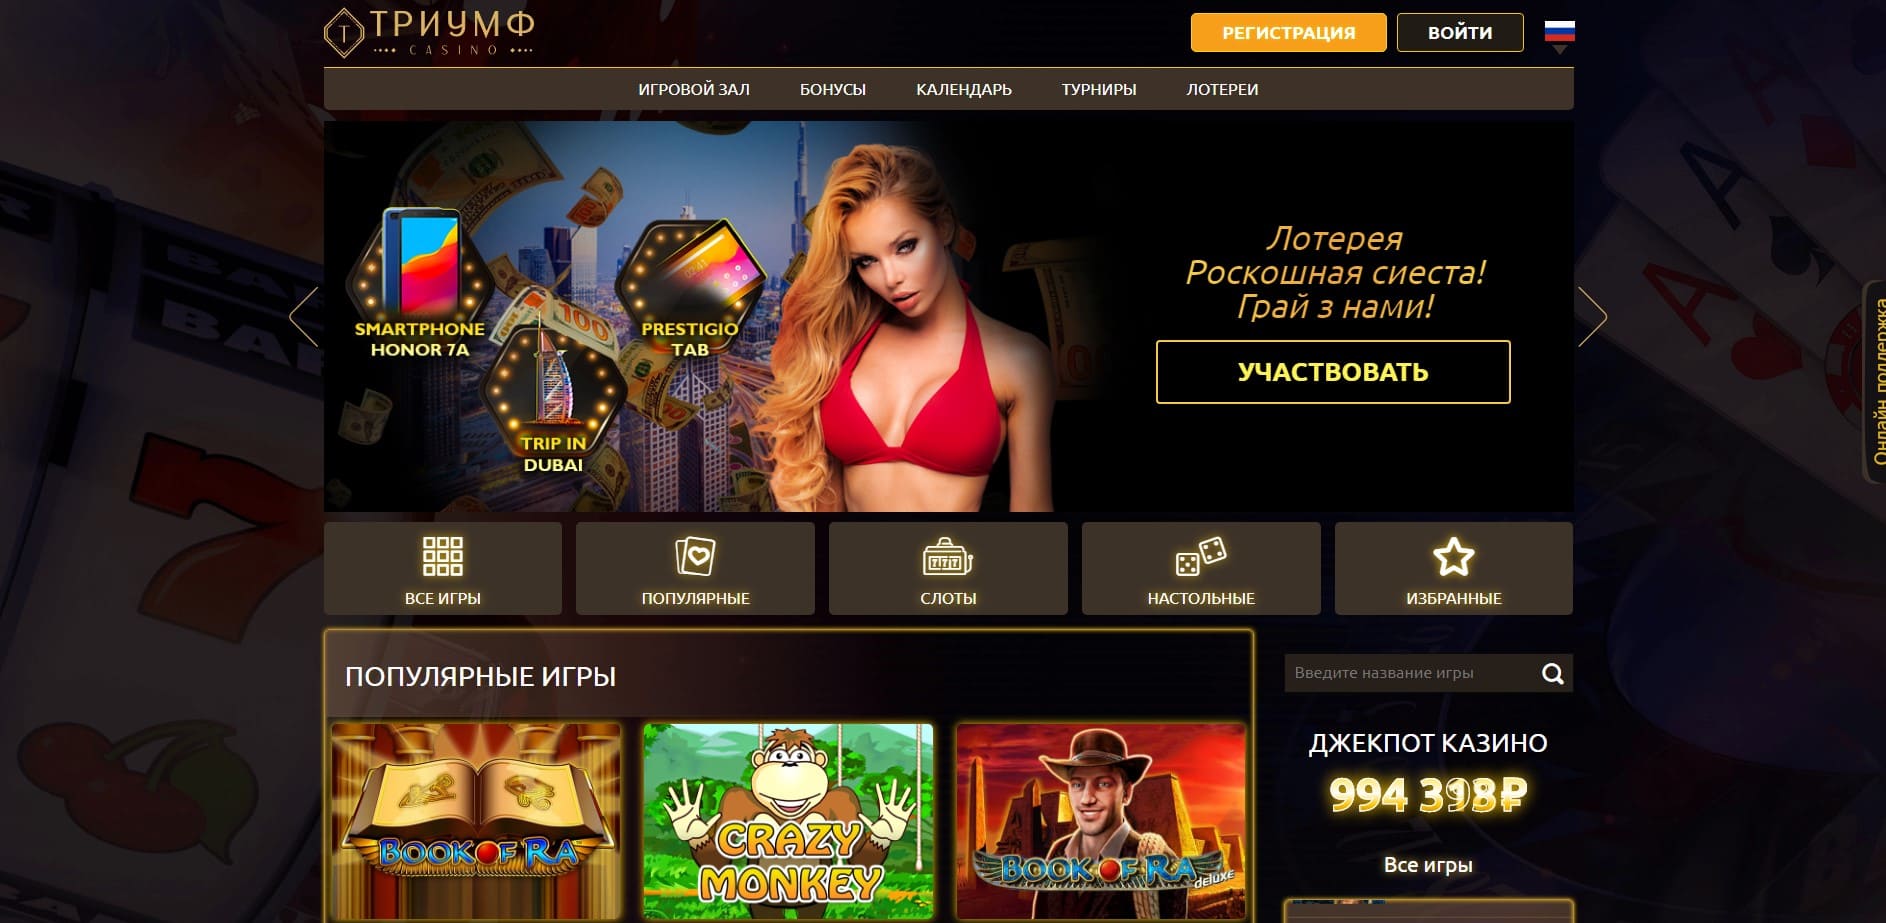 фриспины Triumph Casino  100 руб